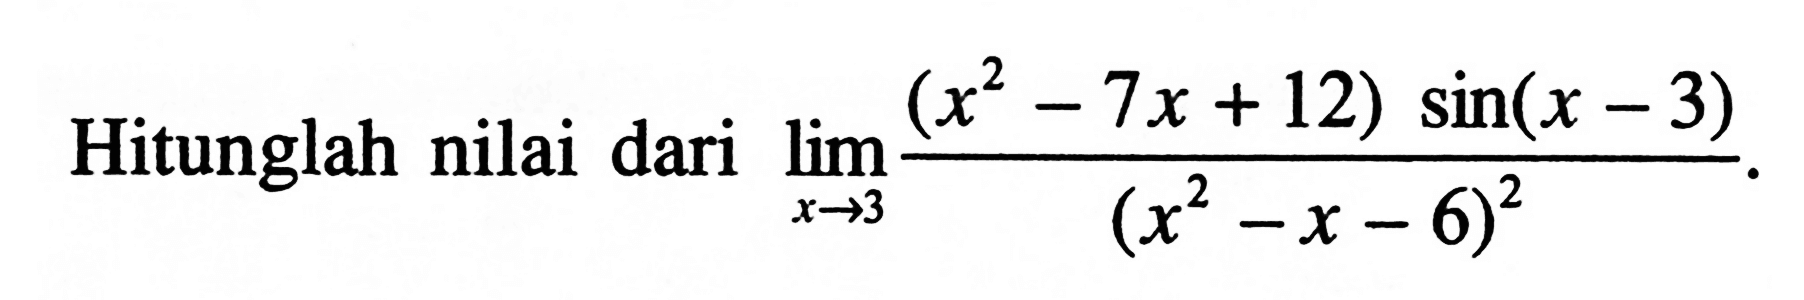 Hitunglah nilai dari lim x->3 ((x^2 -Tx + 12) sin(x - 3) /(x^2 -X-X - 6)^2)